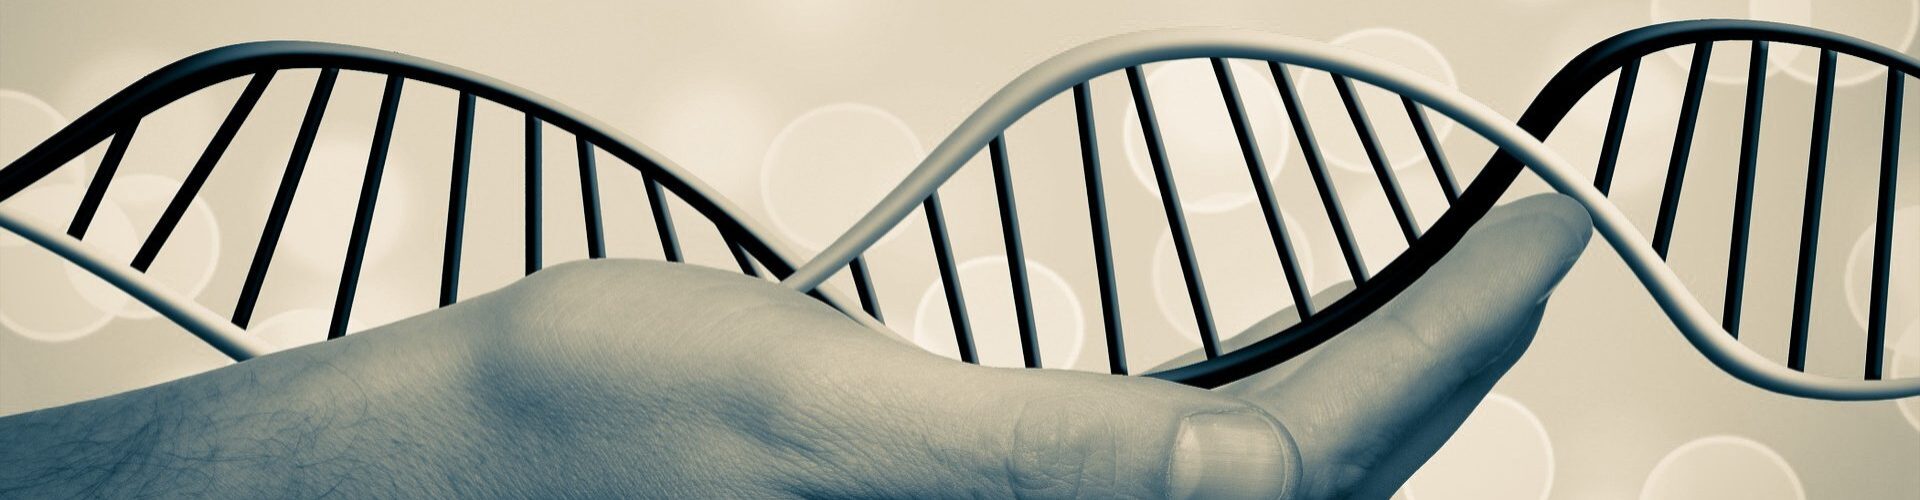 Test ADN et généalogie: généalogie génétique par l’ADN autosomique